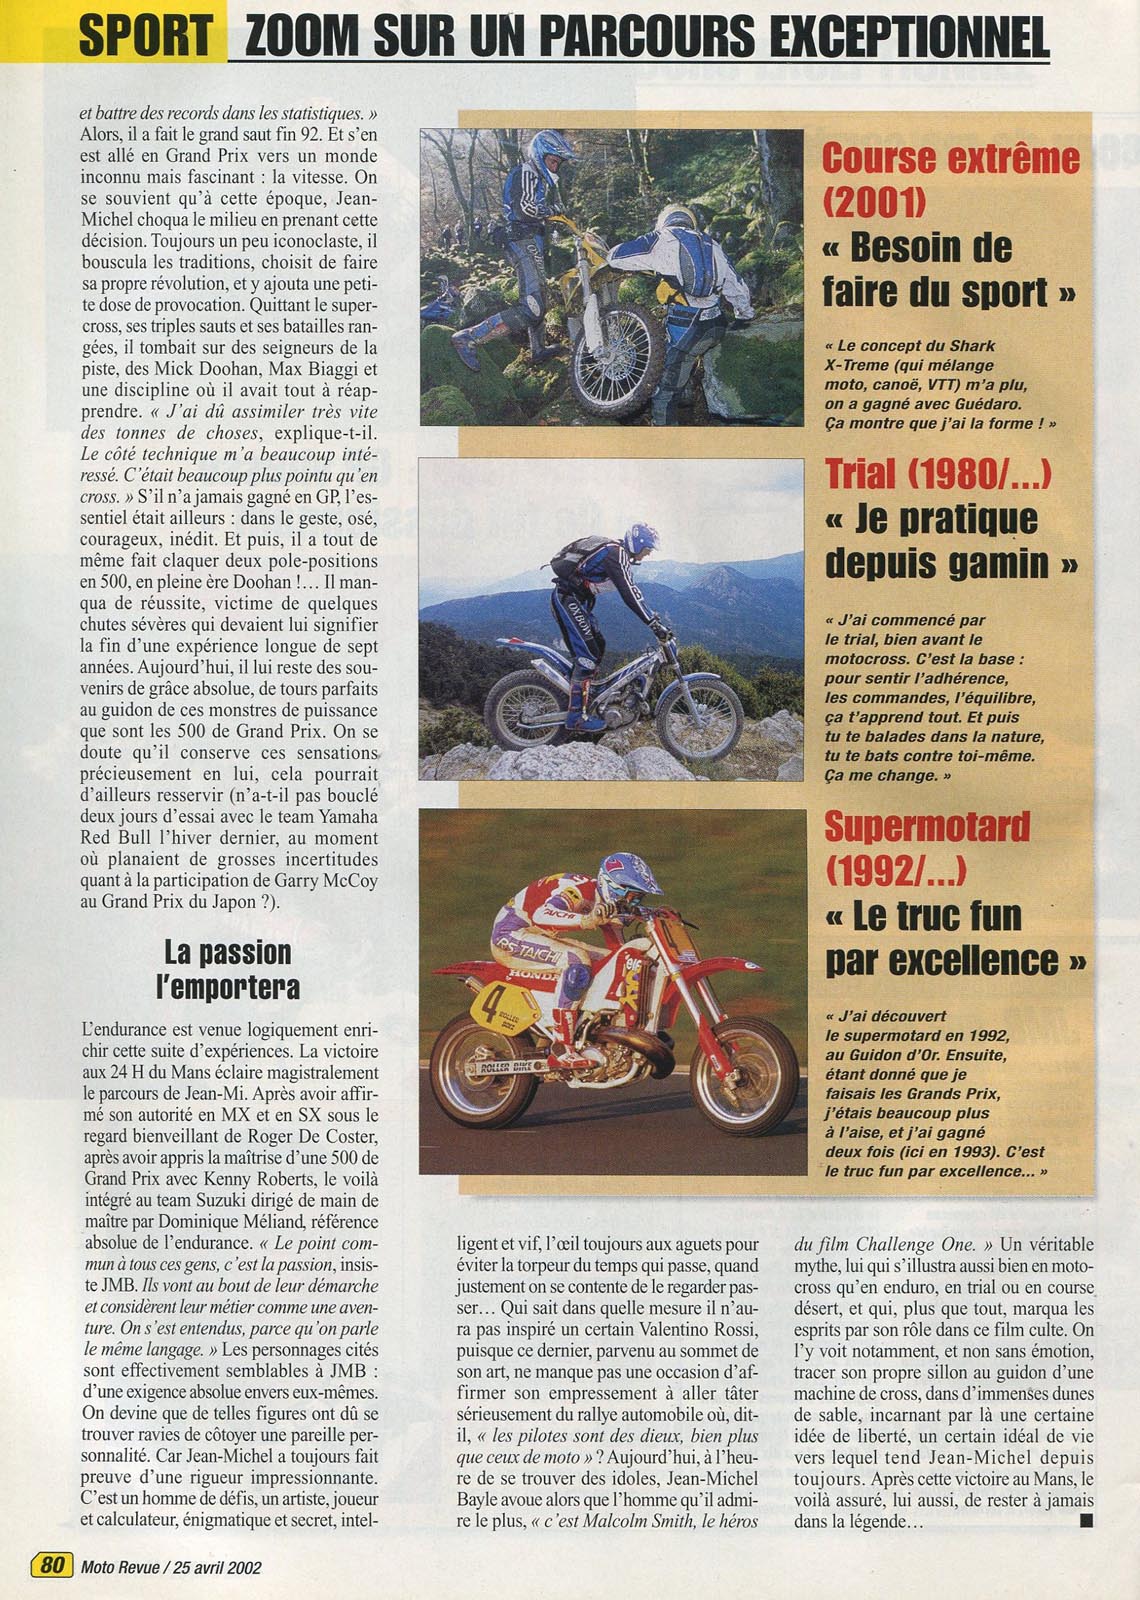 La page 80 du Moto Revue 3516 où l'équipe de Moto Revue lui consacre une entrevue